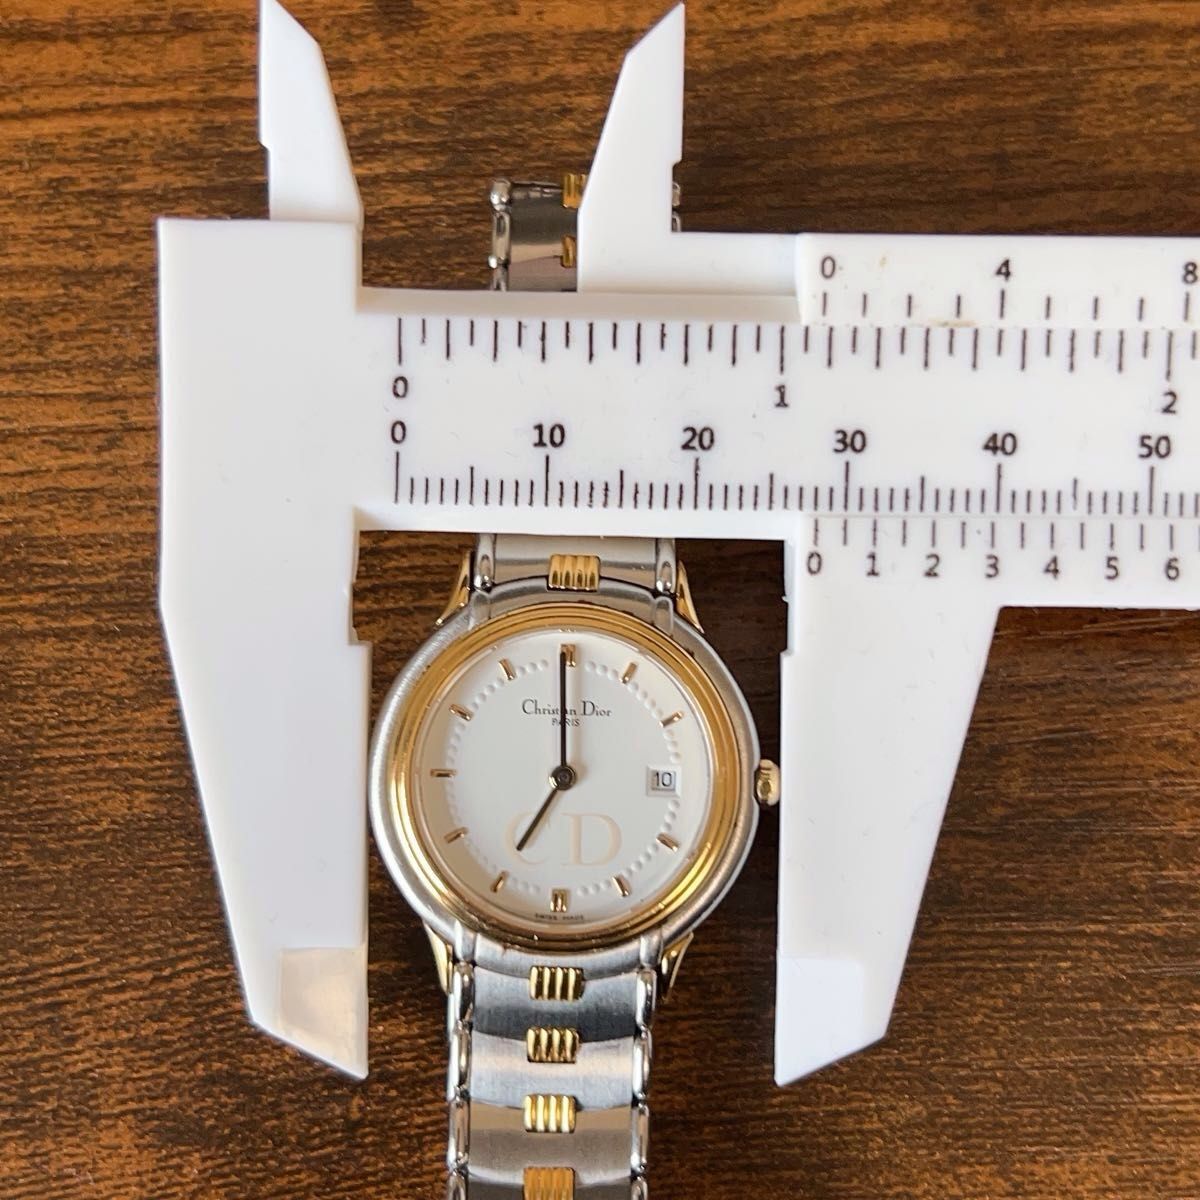 【本日限定】クリスチャン ディオール Christian Dior 腕時計 レディス